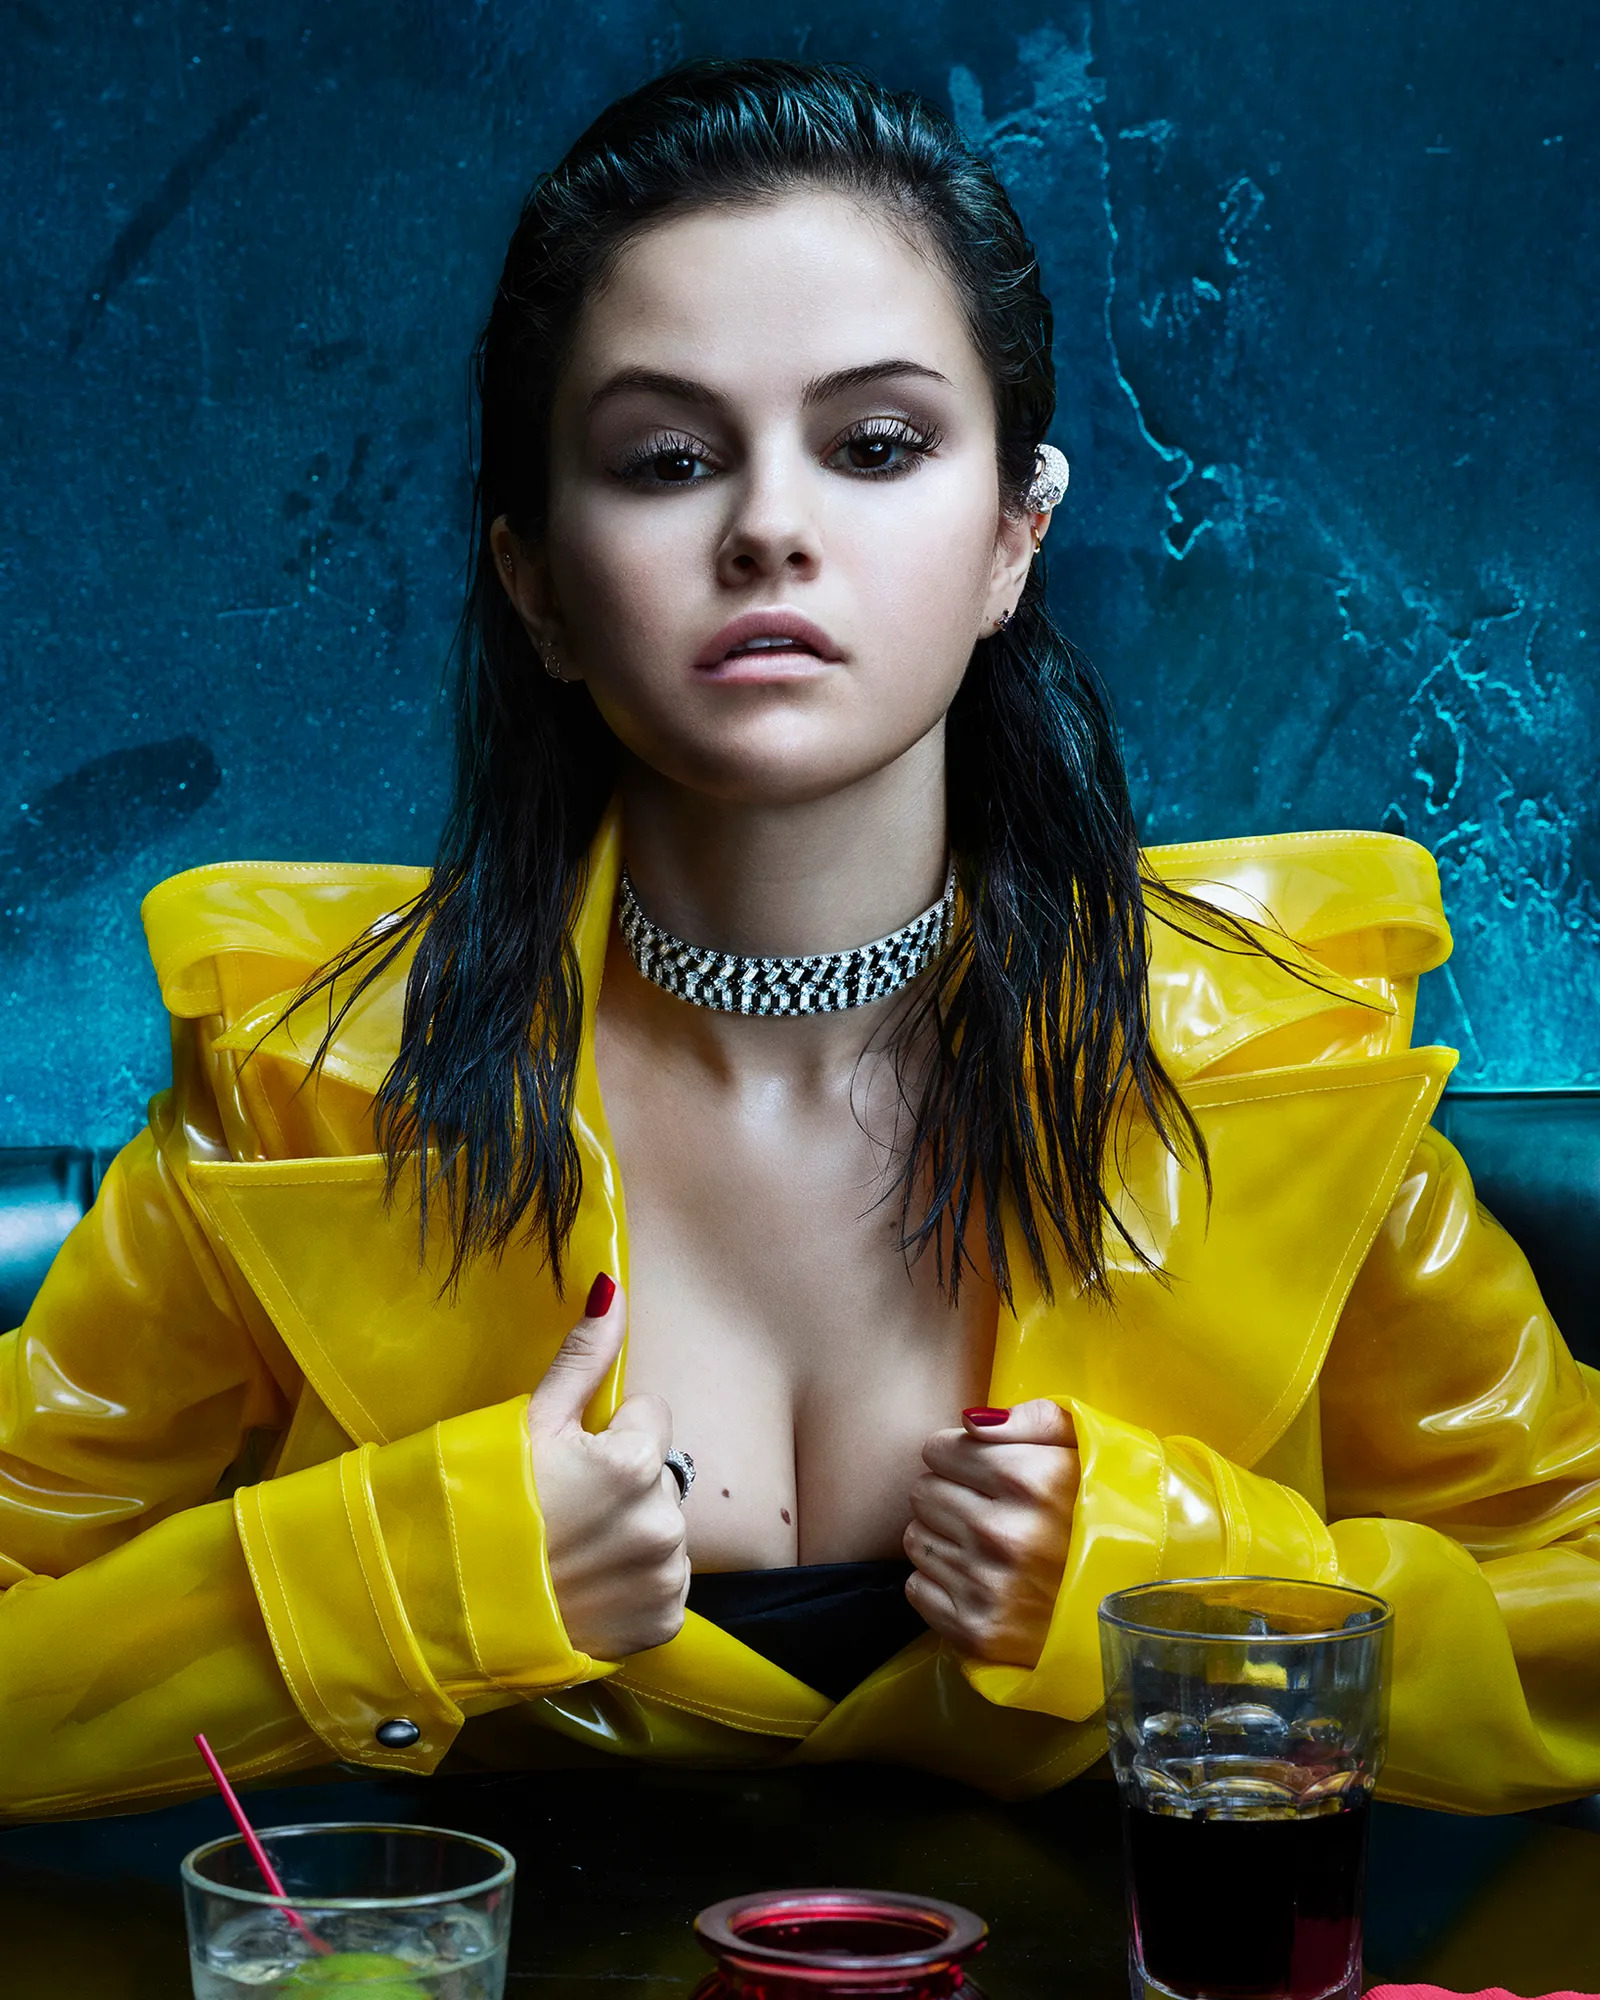 Khung hình quyền lực “ngợp thở” của 12 nghệ sĩ: Selena Gomez bốc lửa bên mỹ nhân Squid Game, em gái Black Widow cùng dàn sao tỏa sáng - Ảnh 3.